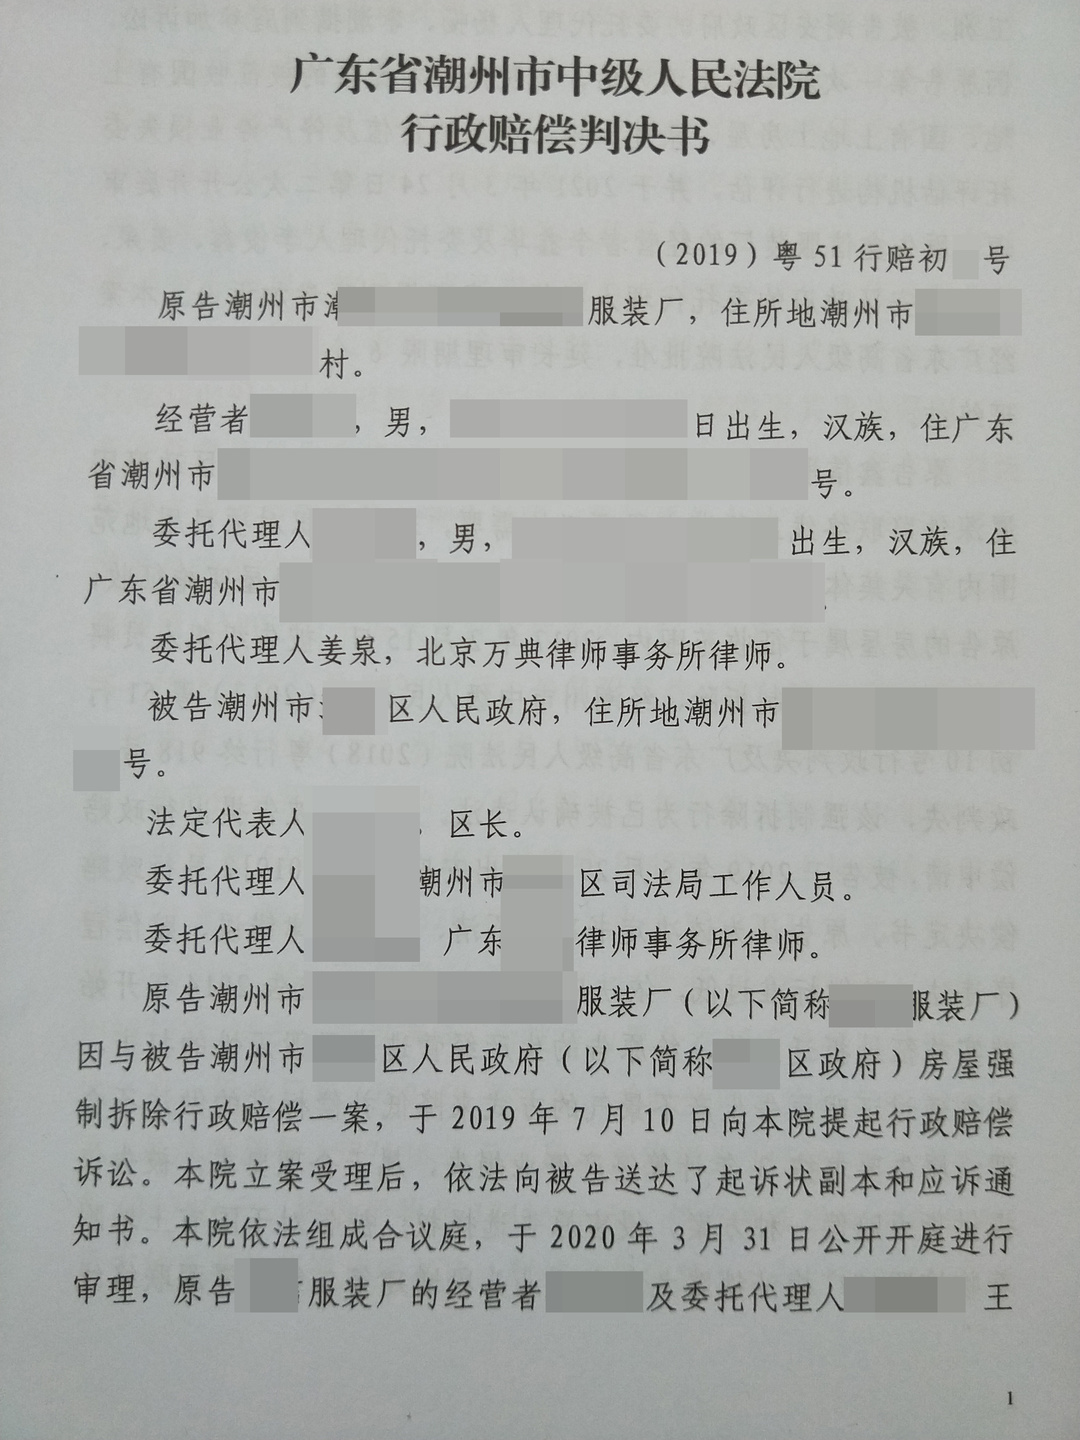 【广东】潮州市中小企业拆迁赔偿典型案例，政府败诉，上诉被驳回!